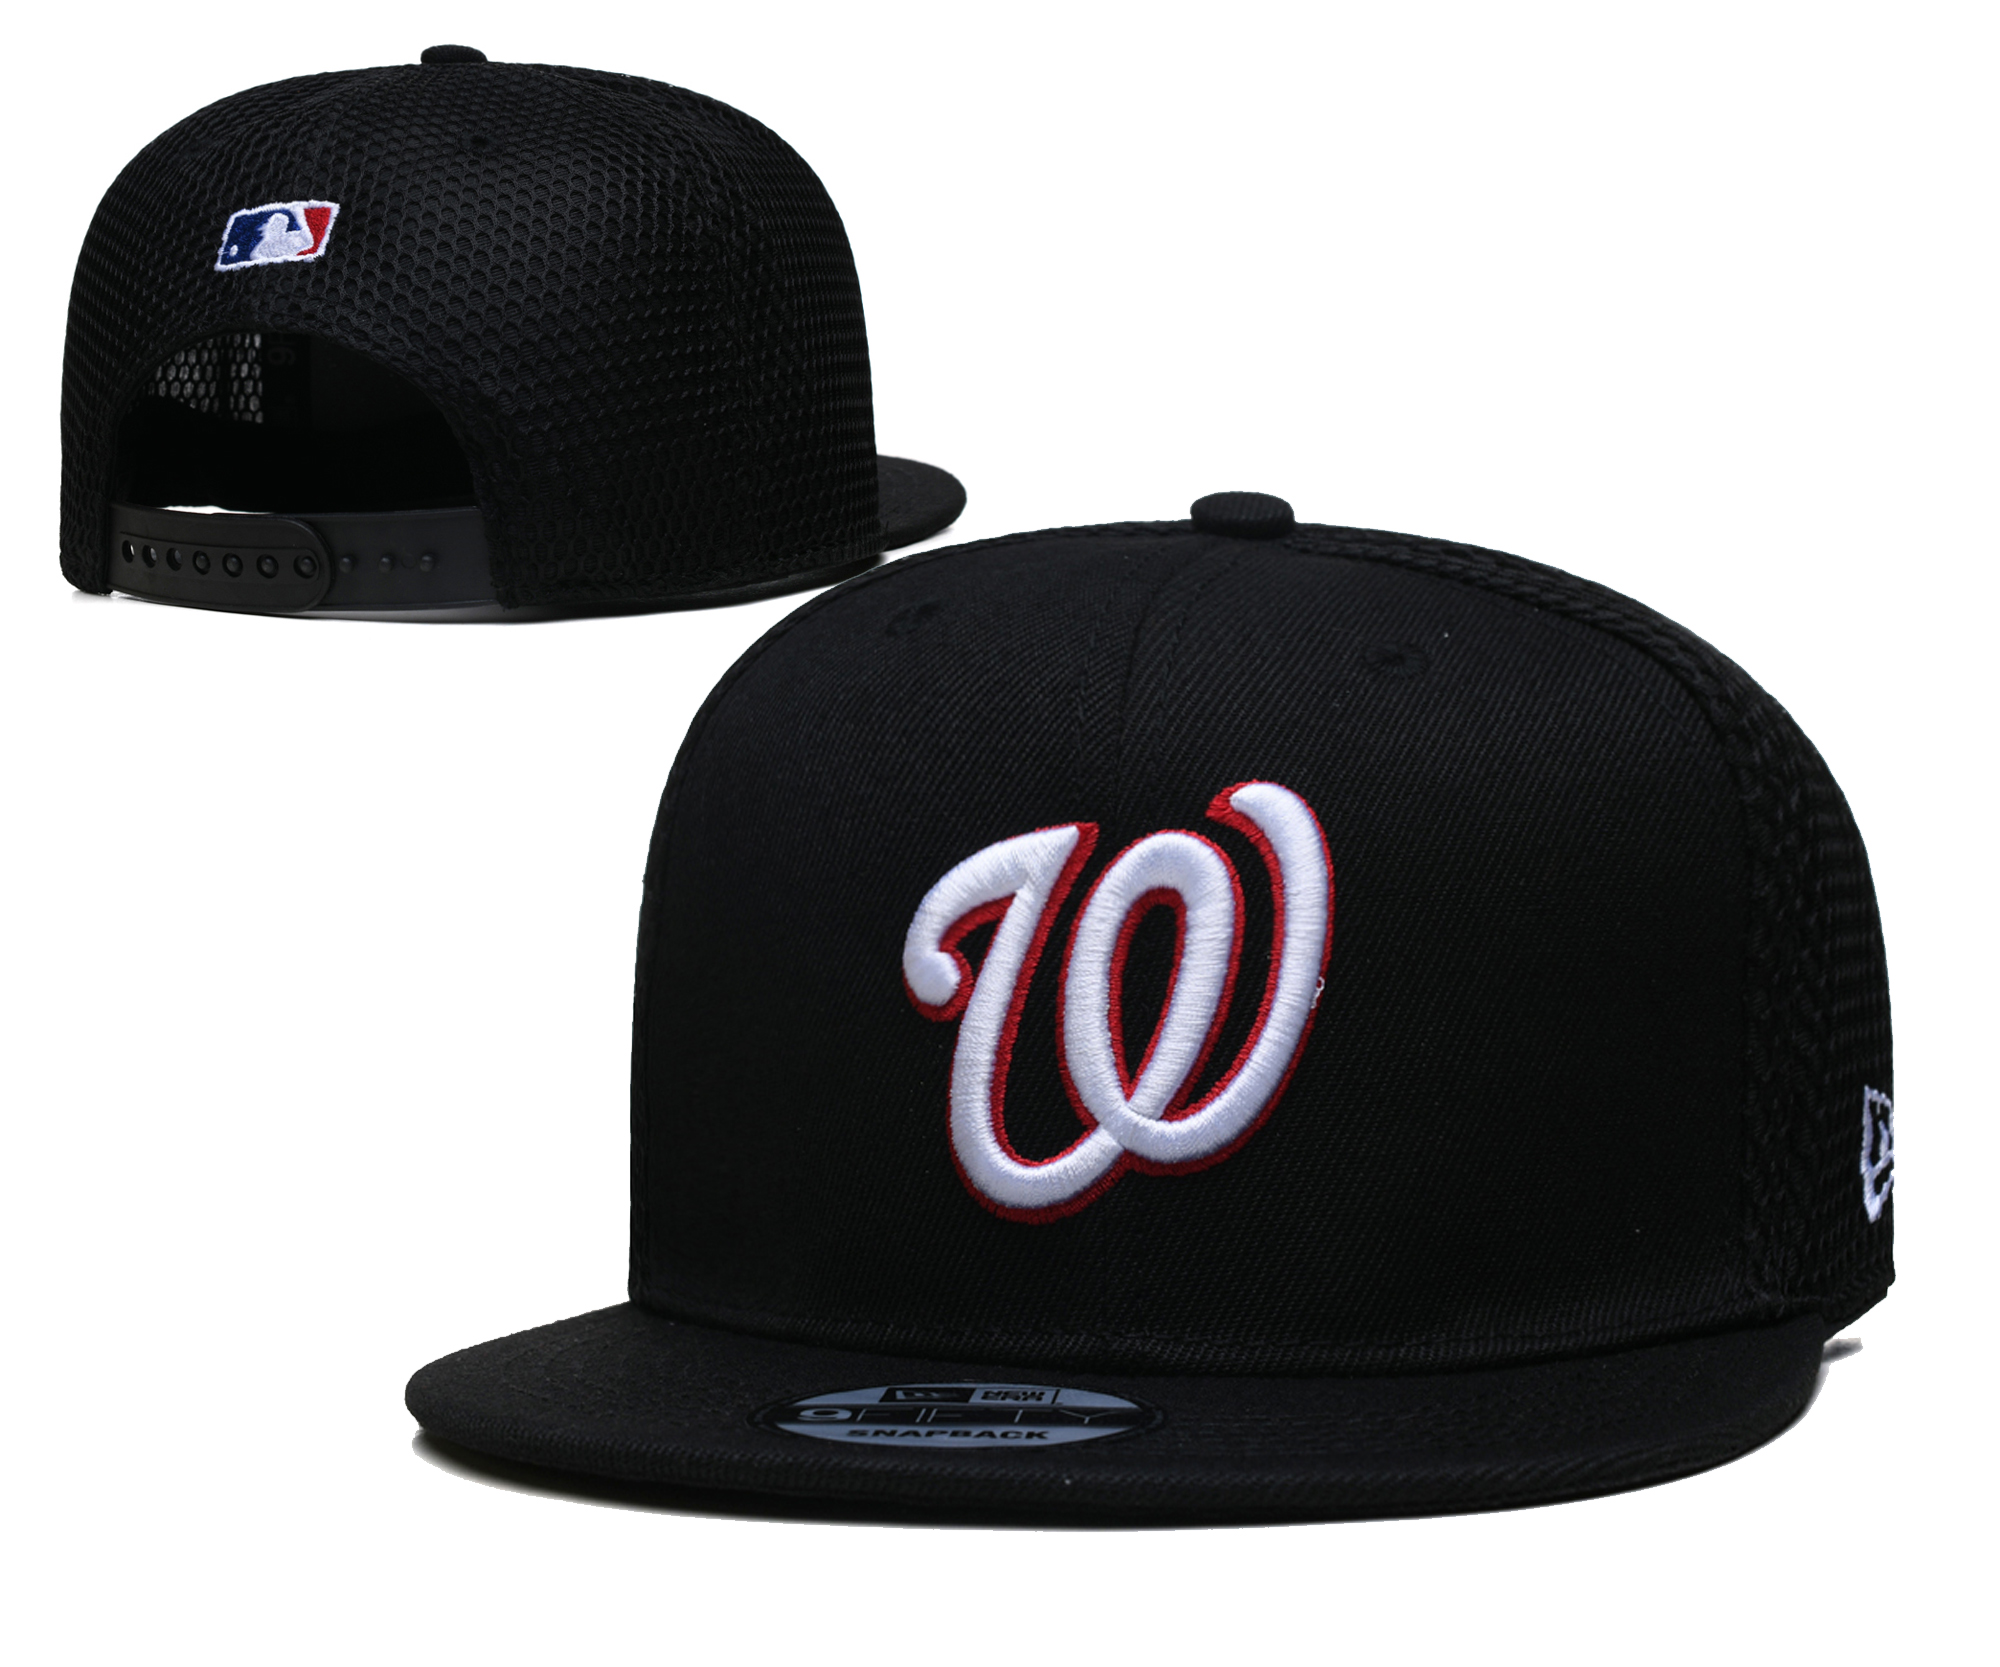 Cheap 2021 MLB Washington Nationals 11 TX hat